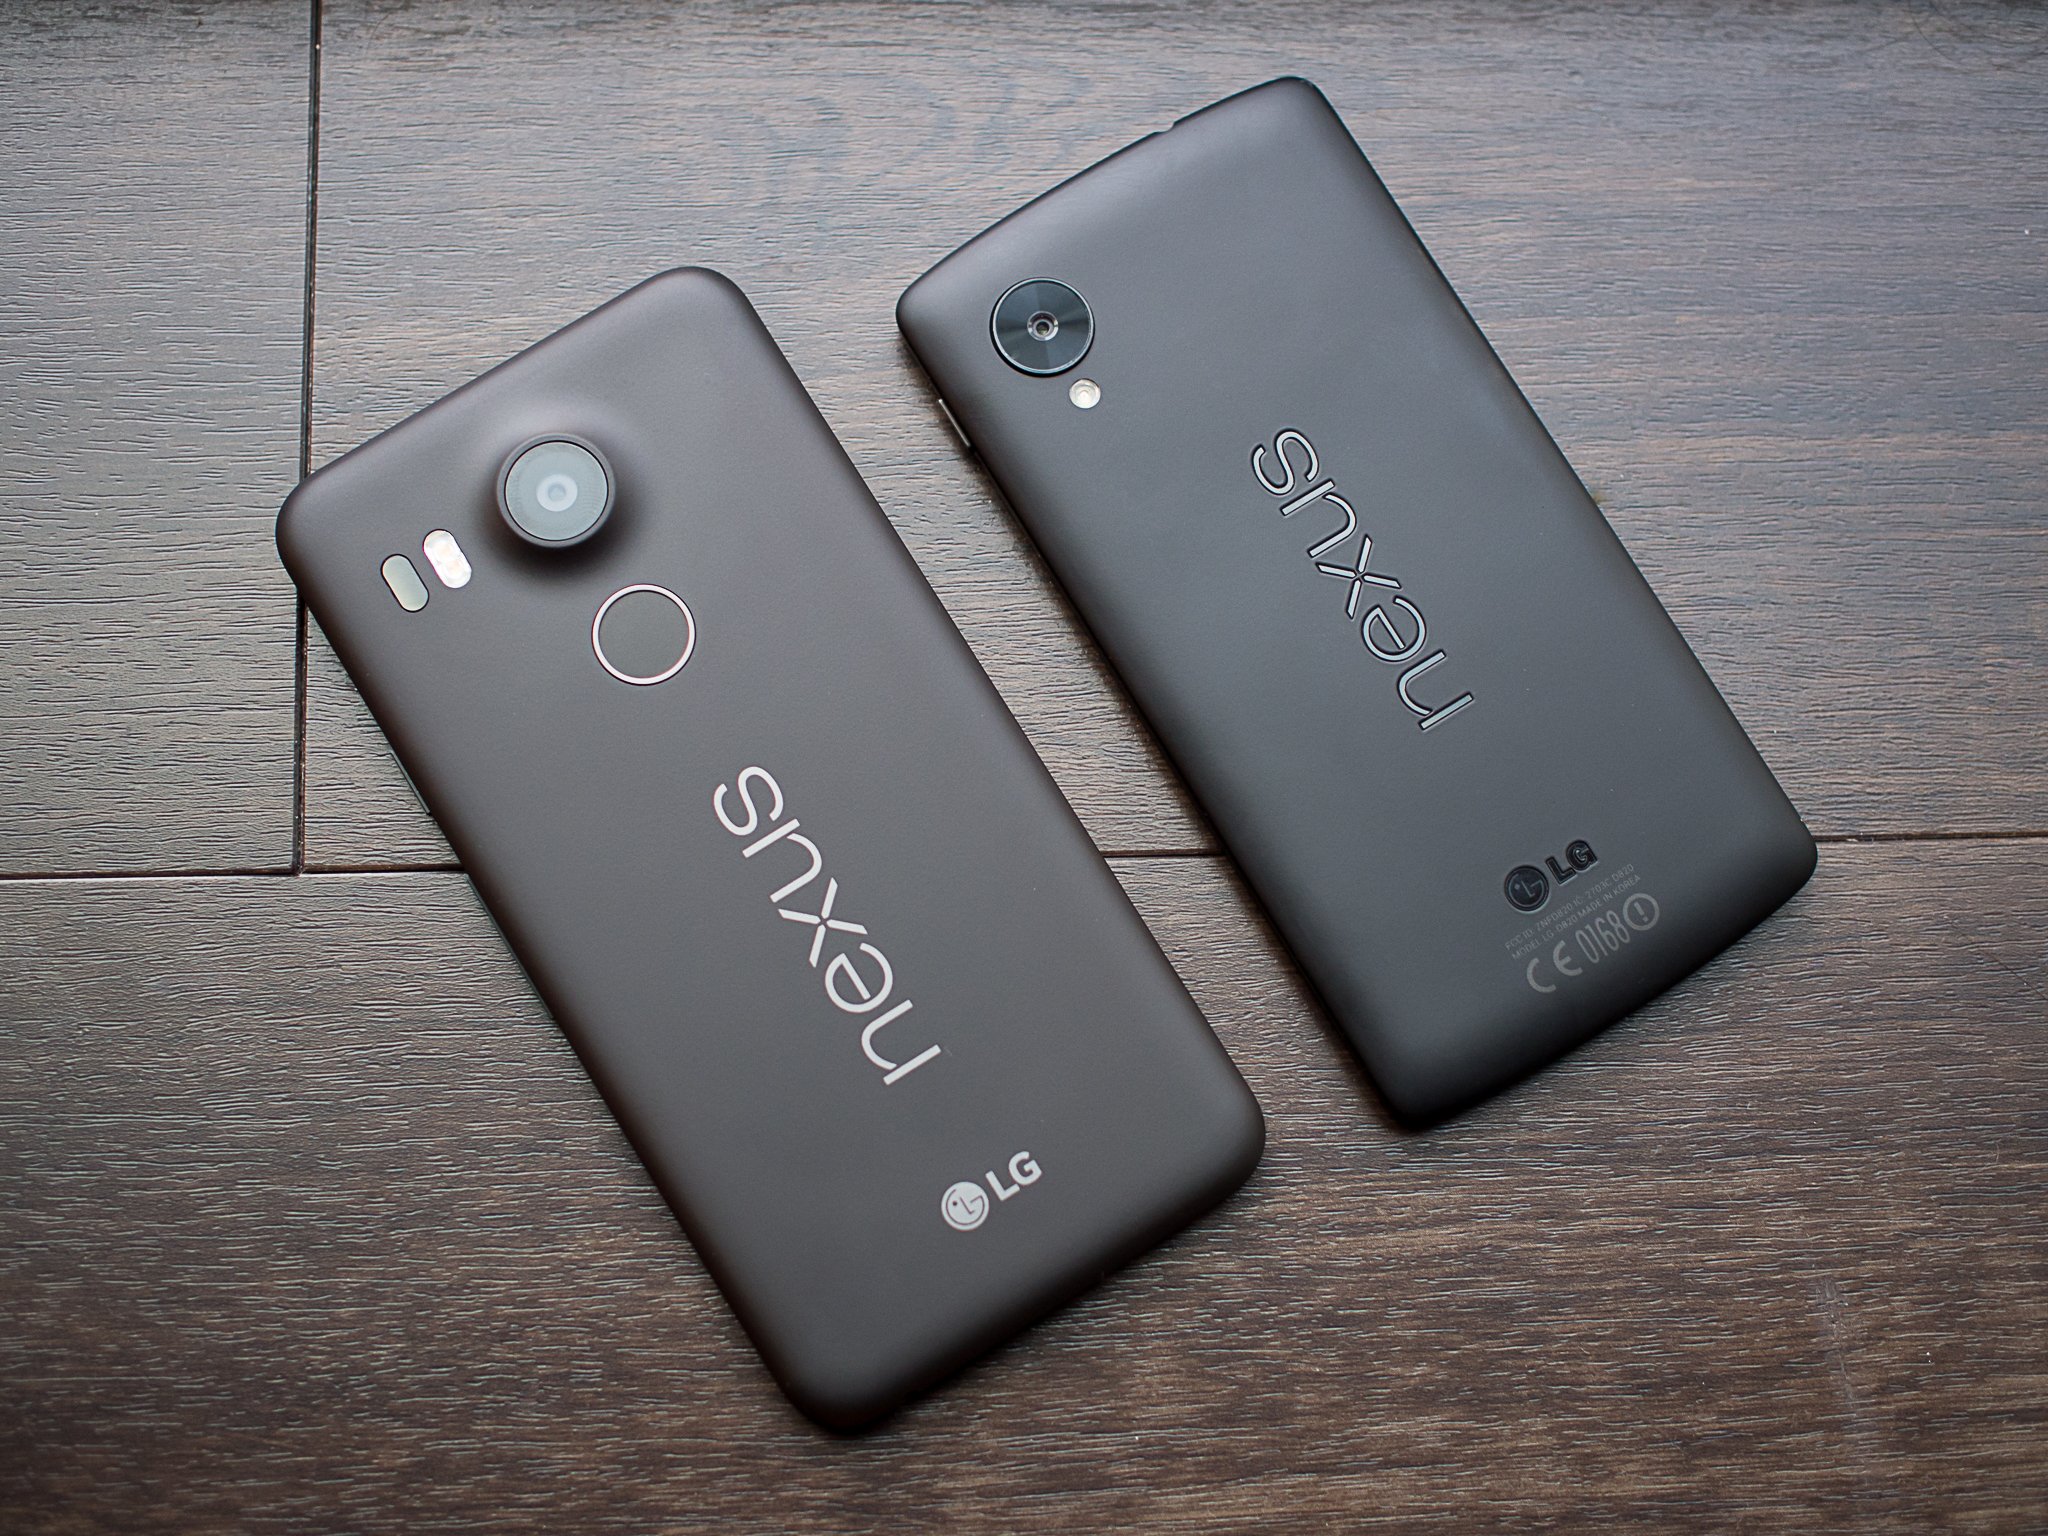 Prohibición Facultad Desventaja Nexus 5X versus the original Nexus 5 | Android Central